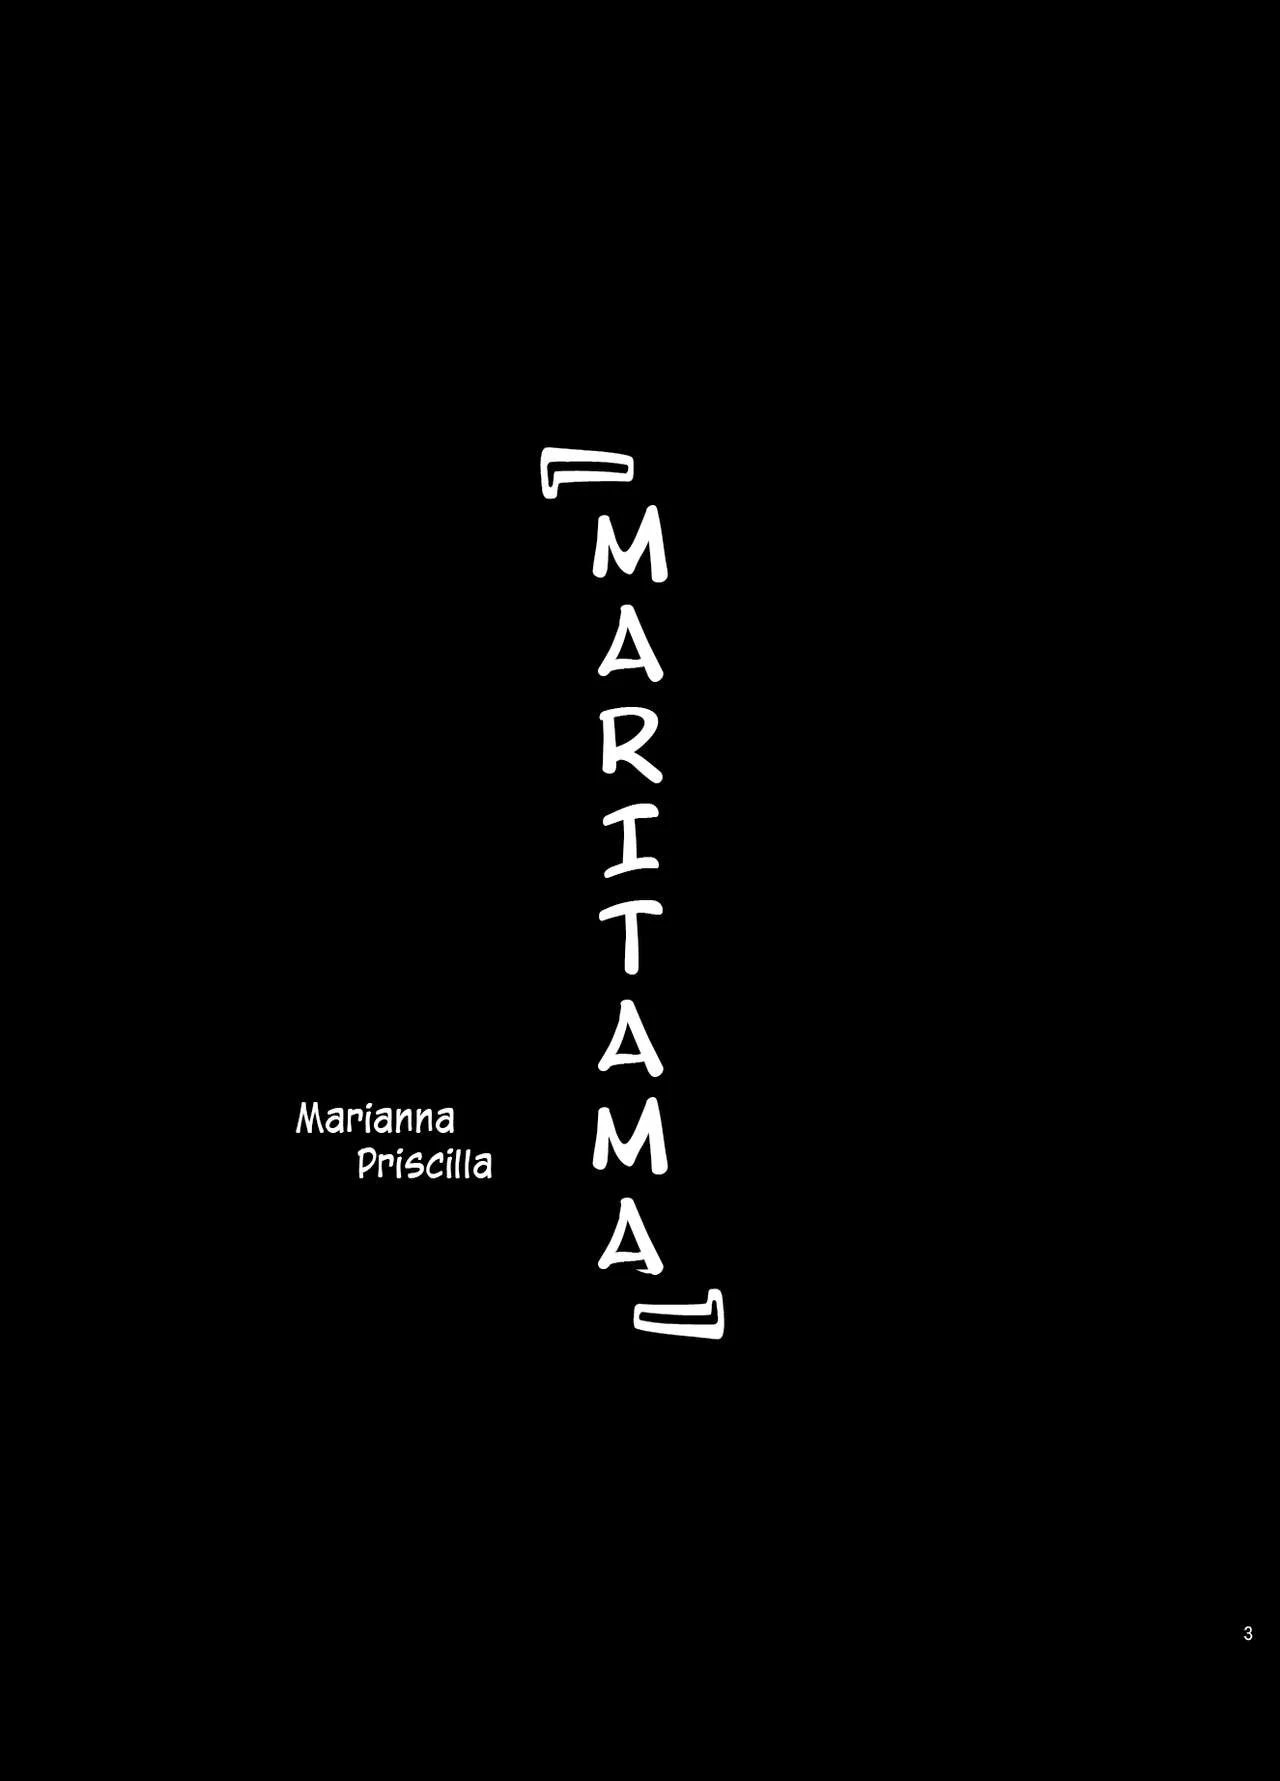 Maritama – Reco Love - a8eda8500c4dbb3cb3ea441bb85e3576